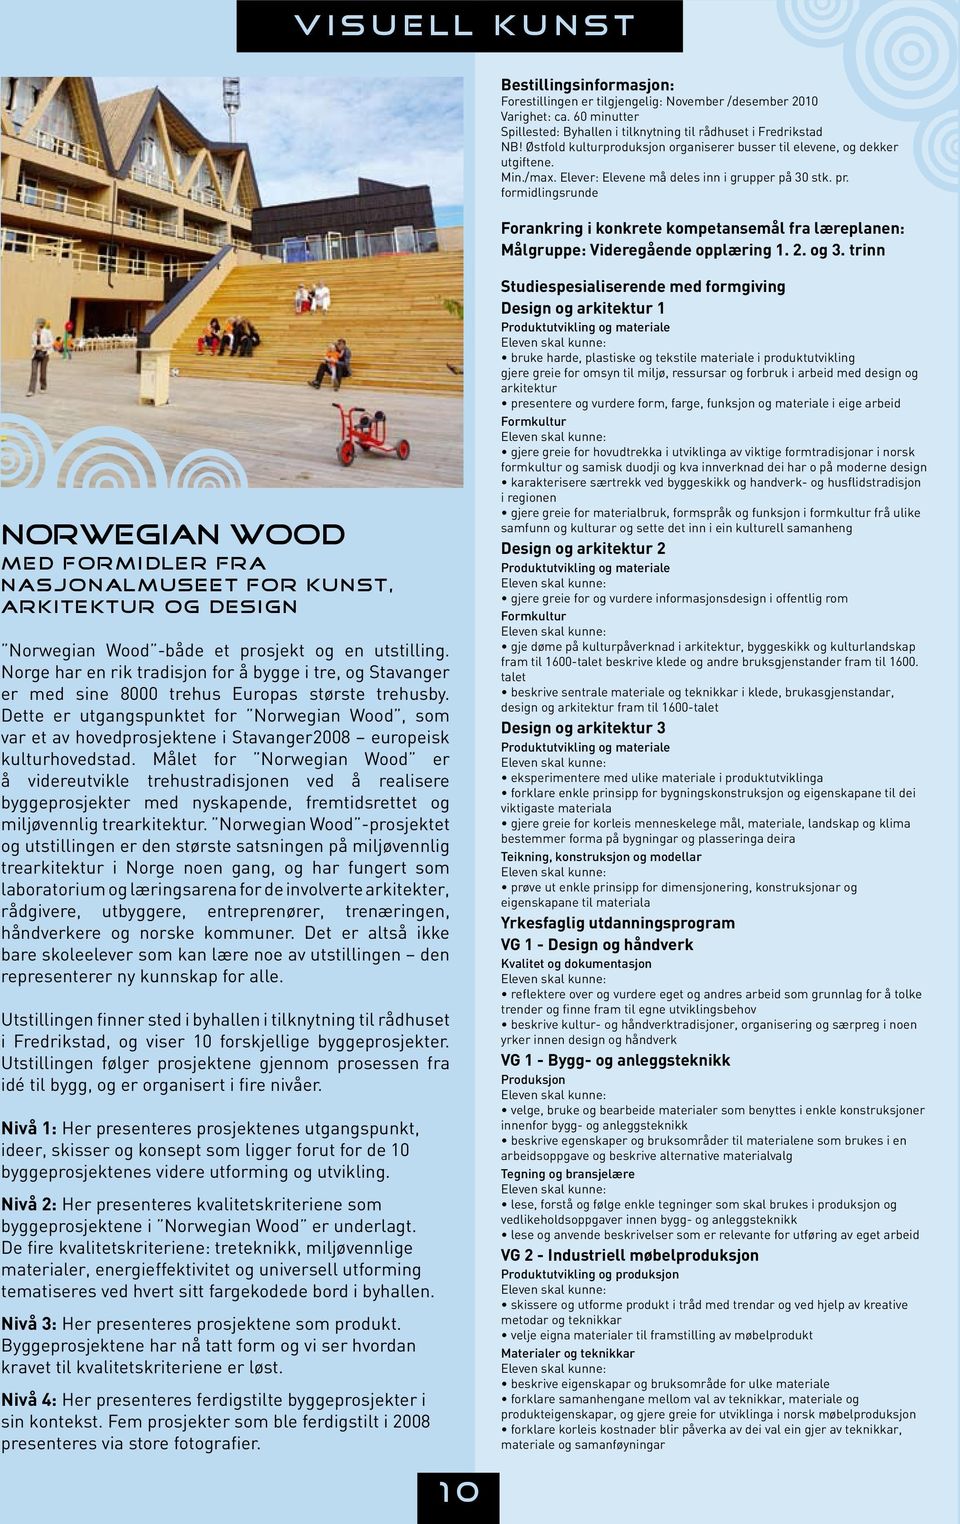 og 3. trinn Norwegian Wood med formidler fra Nasjonalmuseet for kunst, arkitektur og design Norwegian Wood -både et prosjekt og en utstilling.